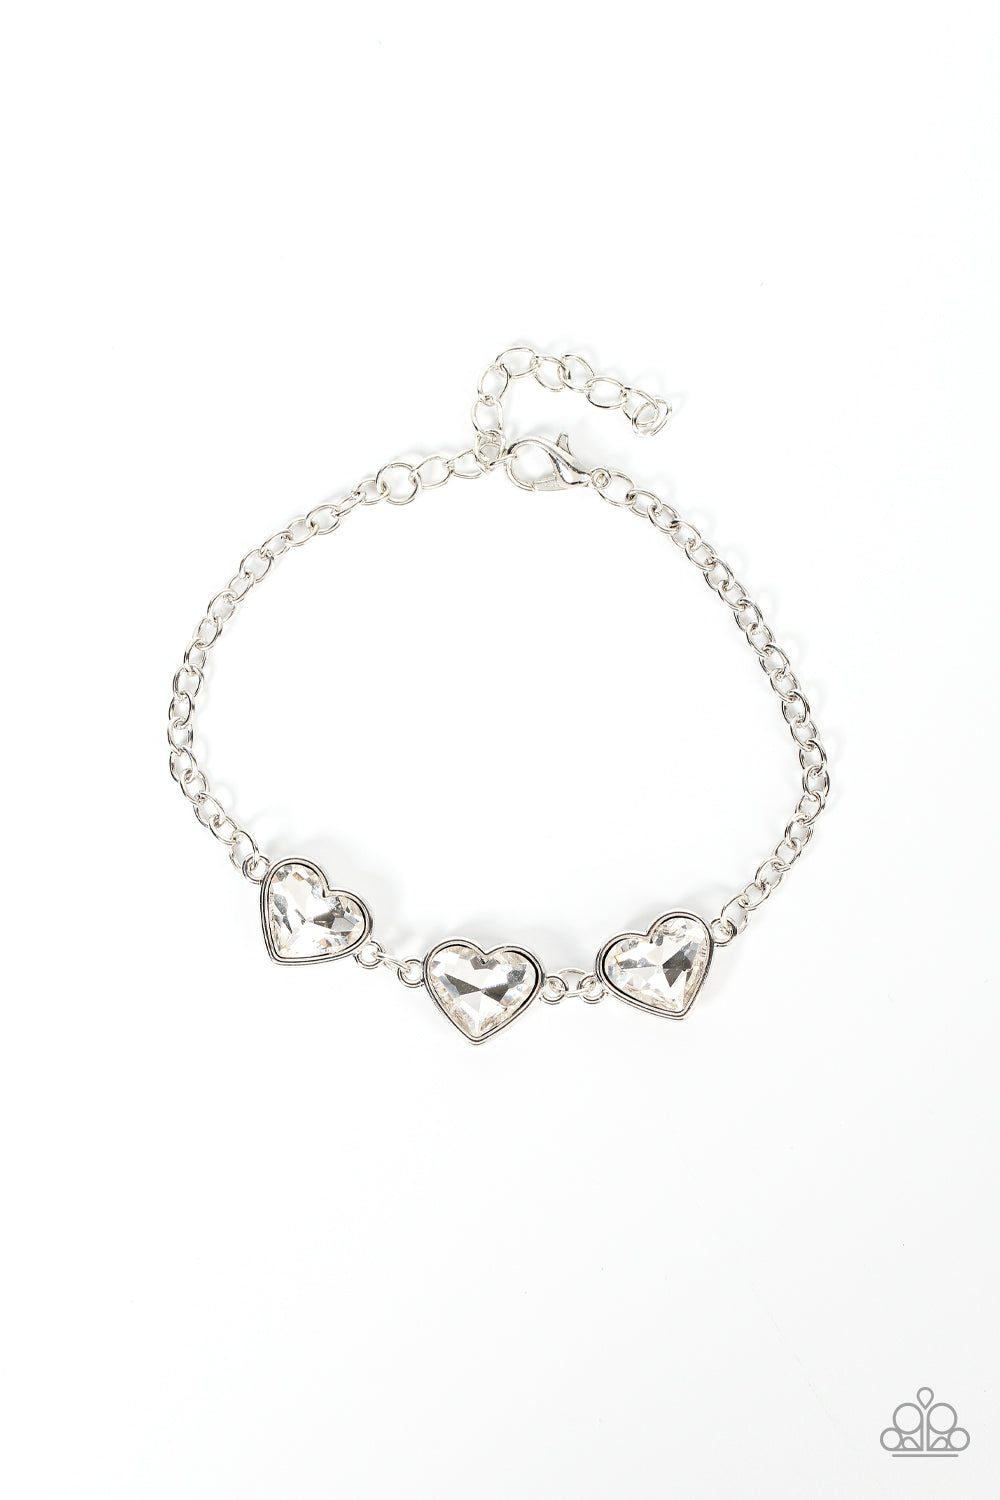 Little Heartbreaker - White (Heart Rhinestone) Bracelet freeshipping - JewLz4u Gemstone Gallery